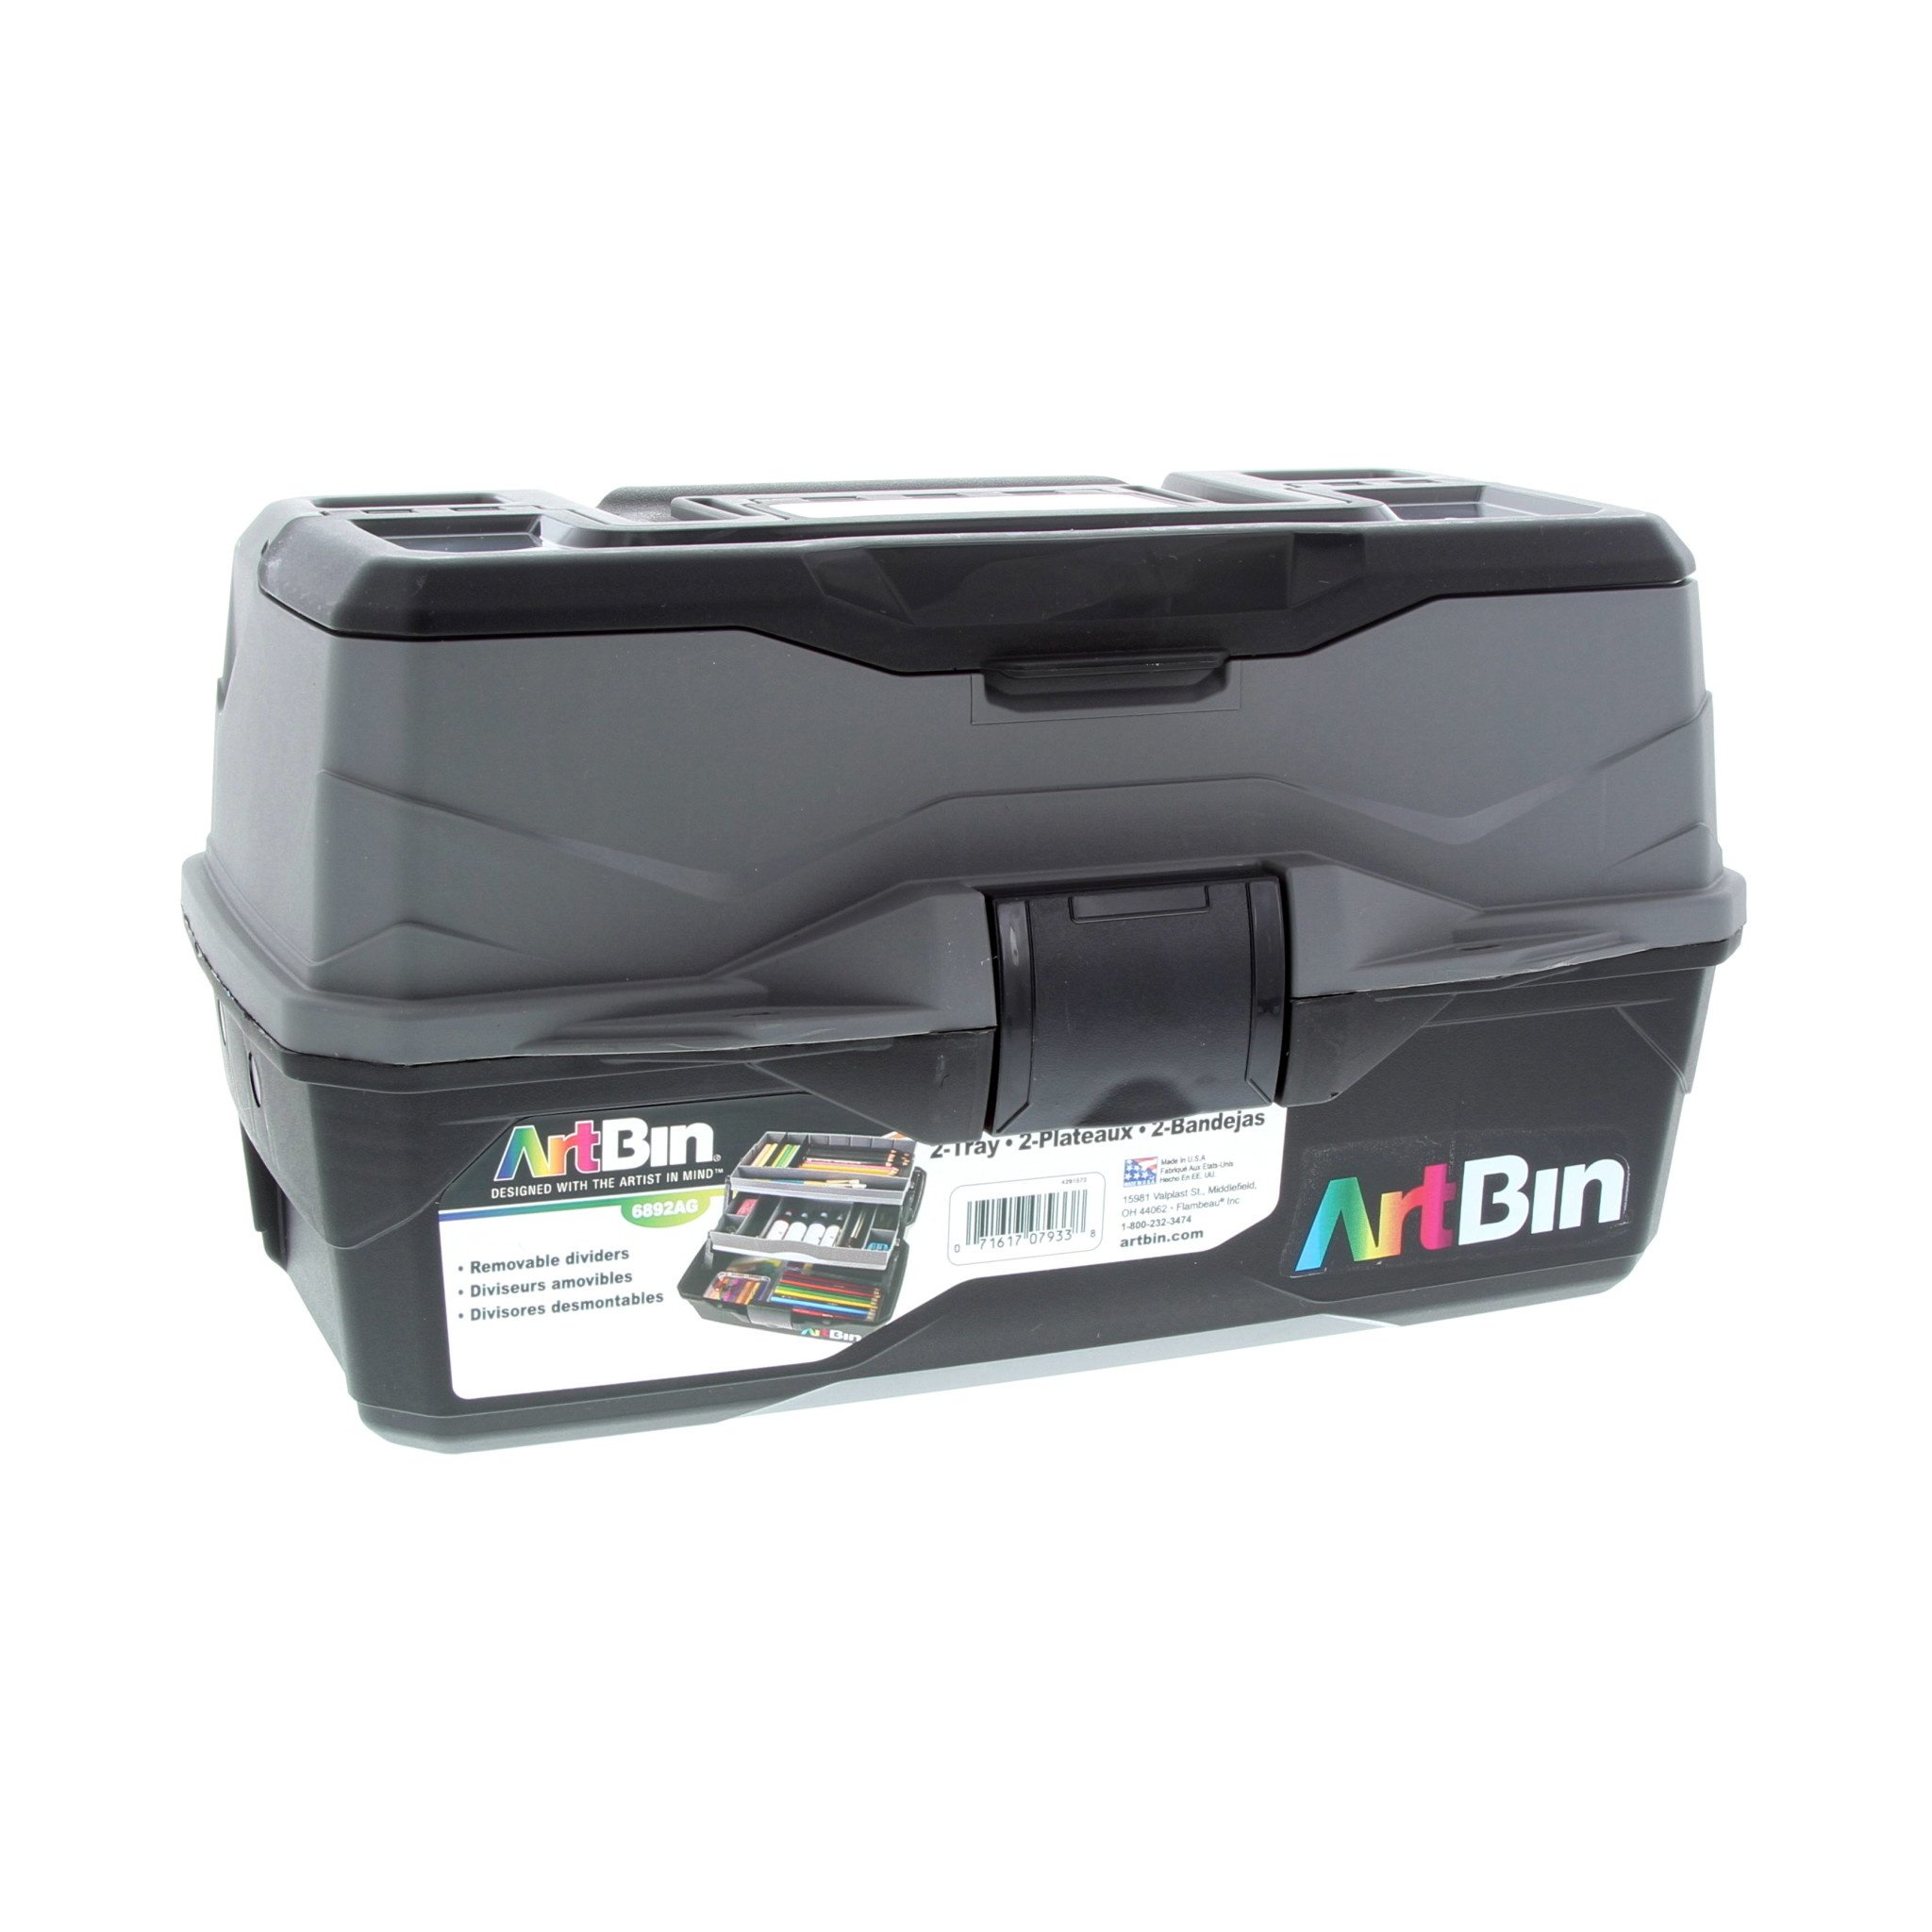 ArtBin 1 Tray Art Supply Box Black/Gray